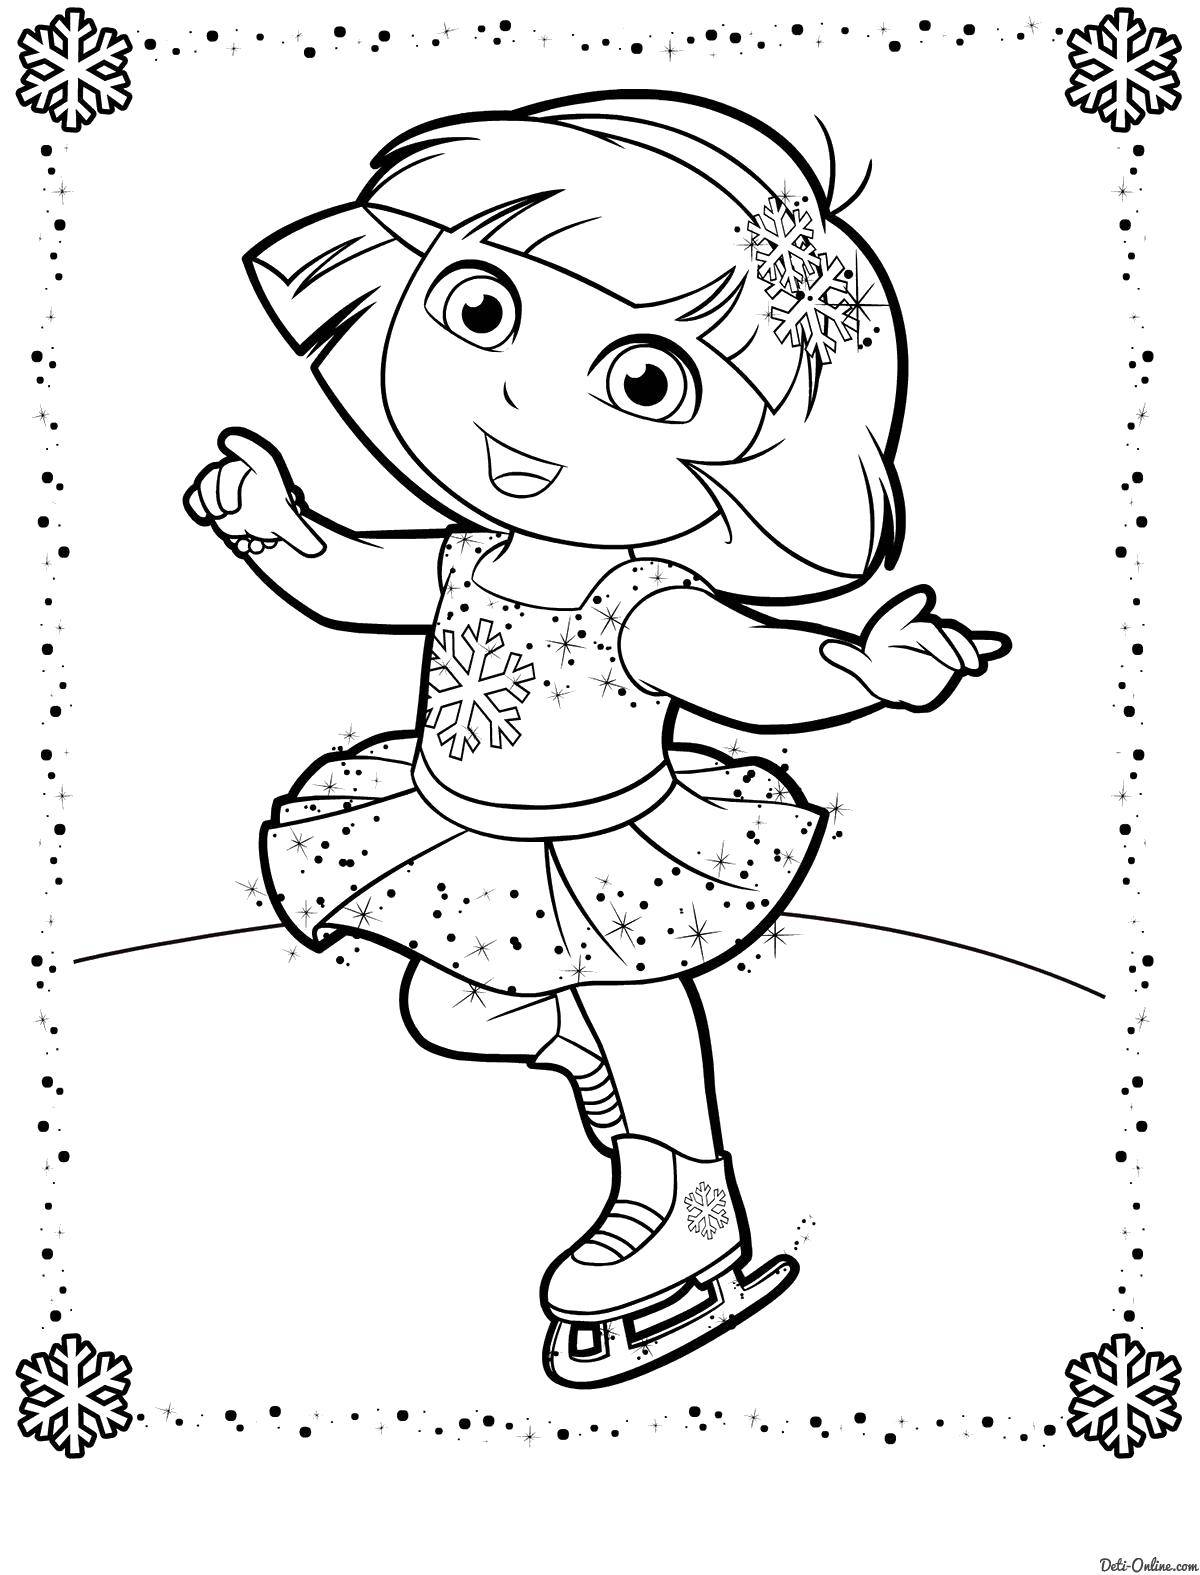 Coloring Dasha skating. Category skating. Tags:  Cartoon character, Dora the Explorer, Dora, Boots.